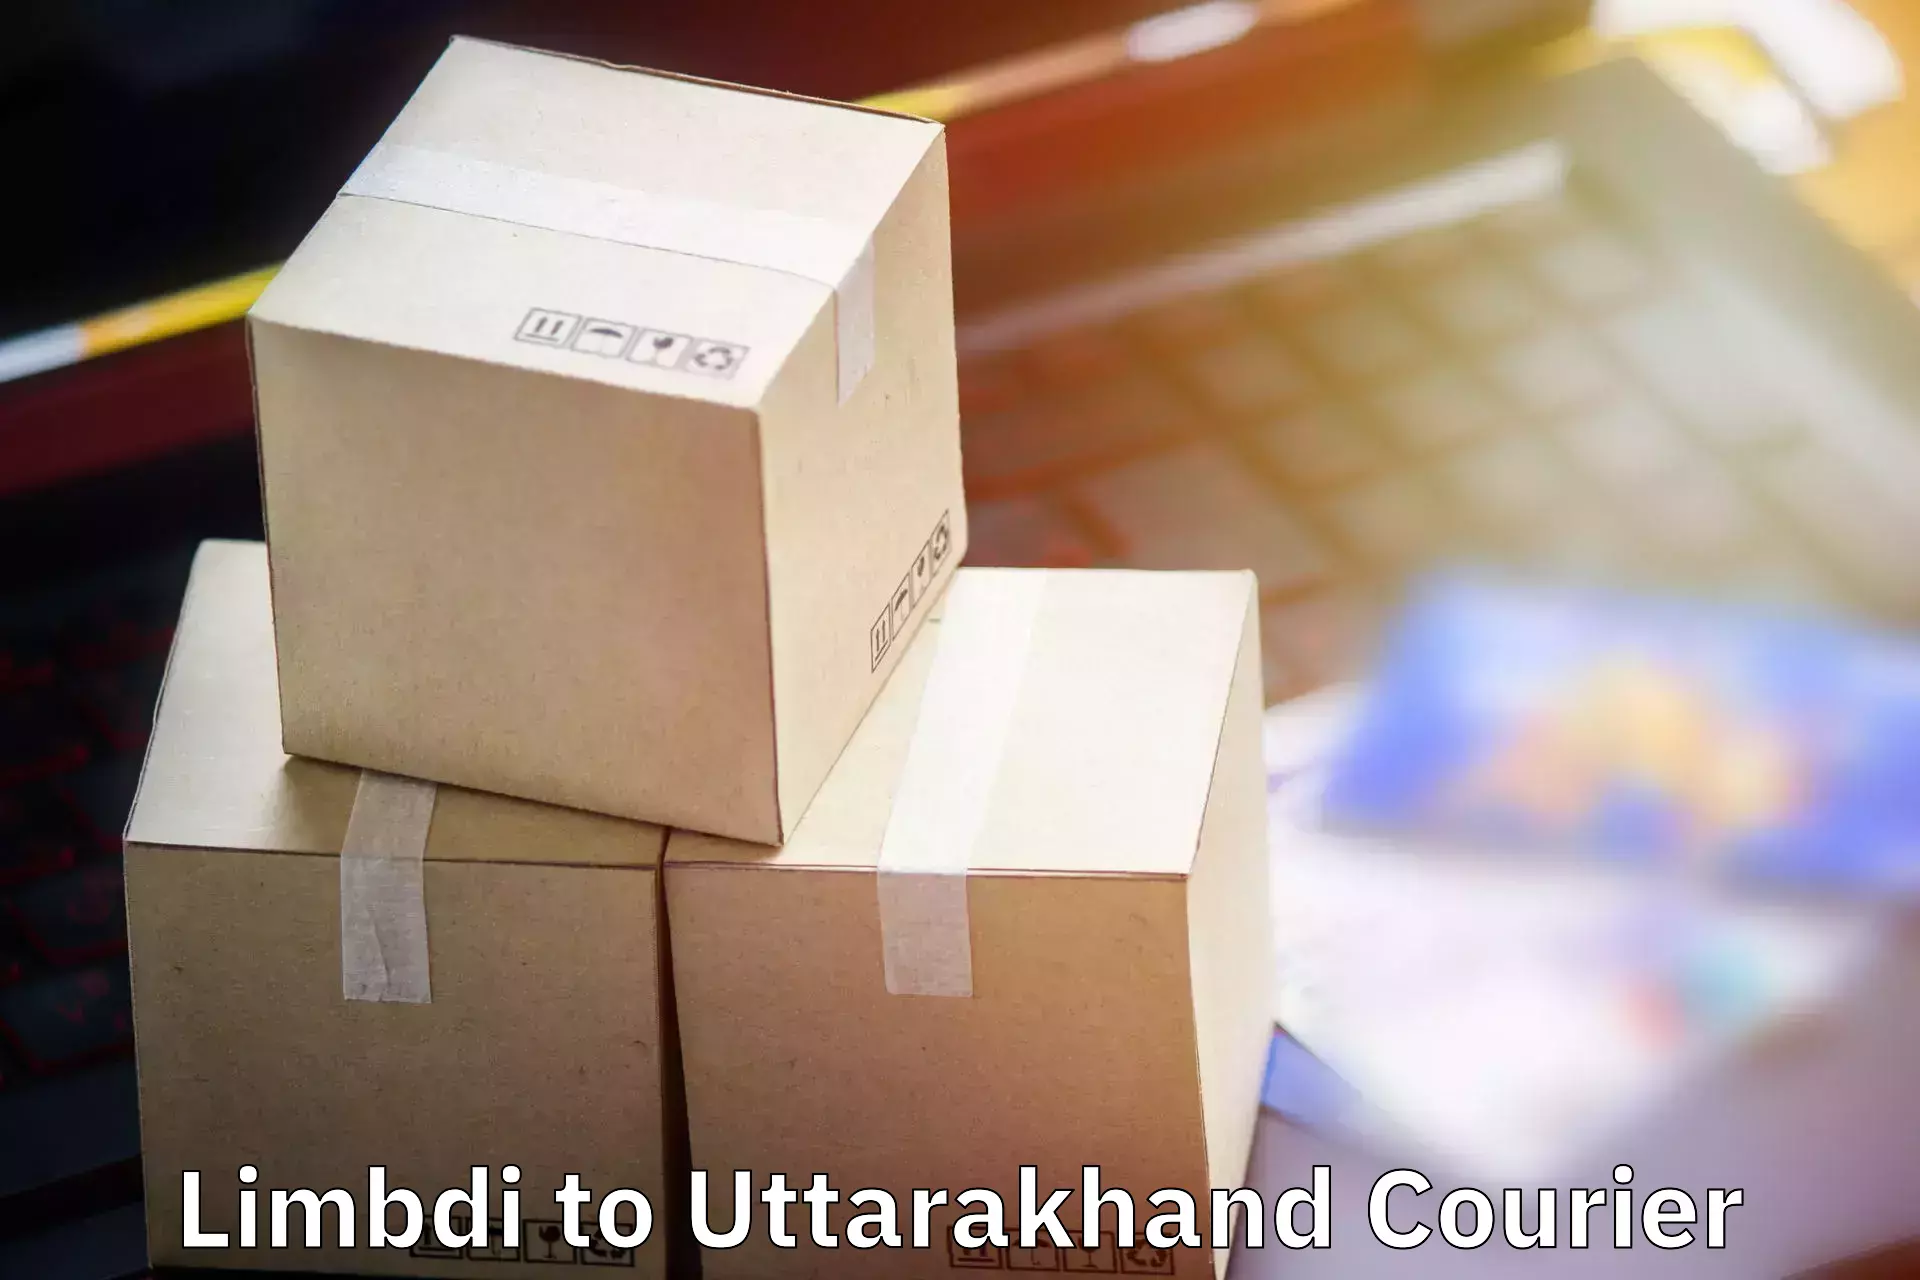 Luggage transport company Limbdi to Uttarakhand